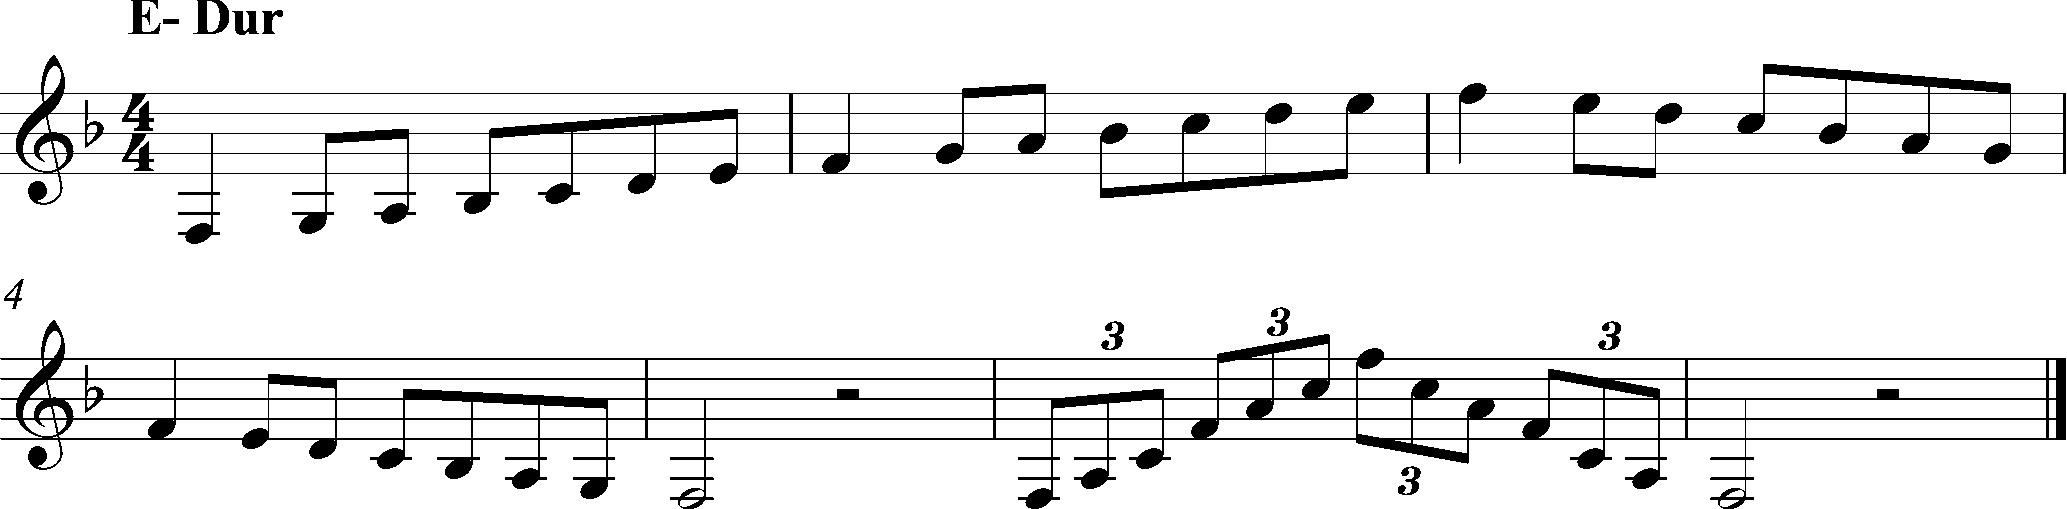 F-Dur, Tonleiter Klarinette